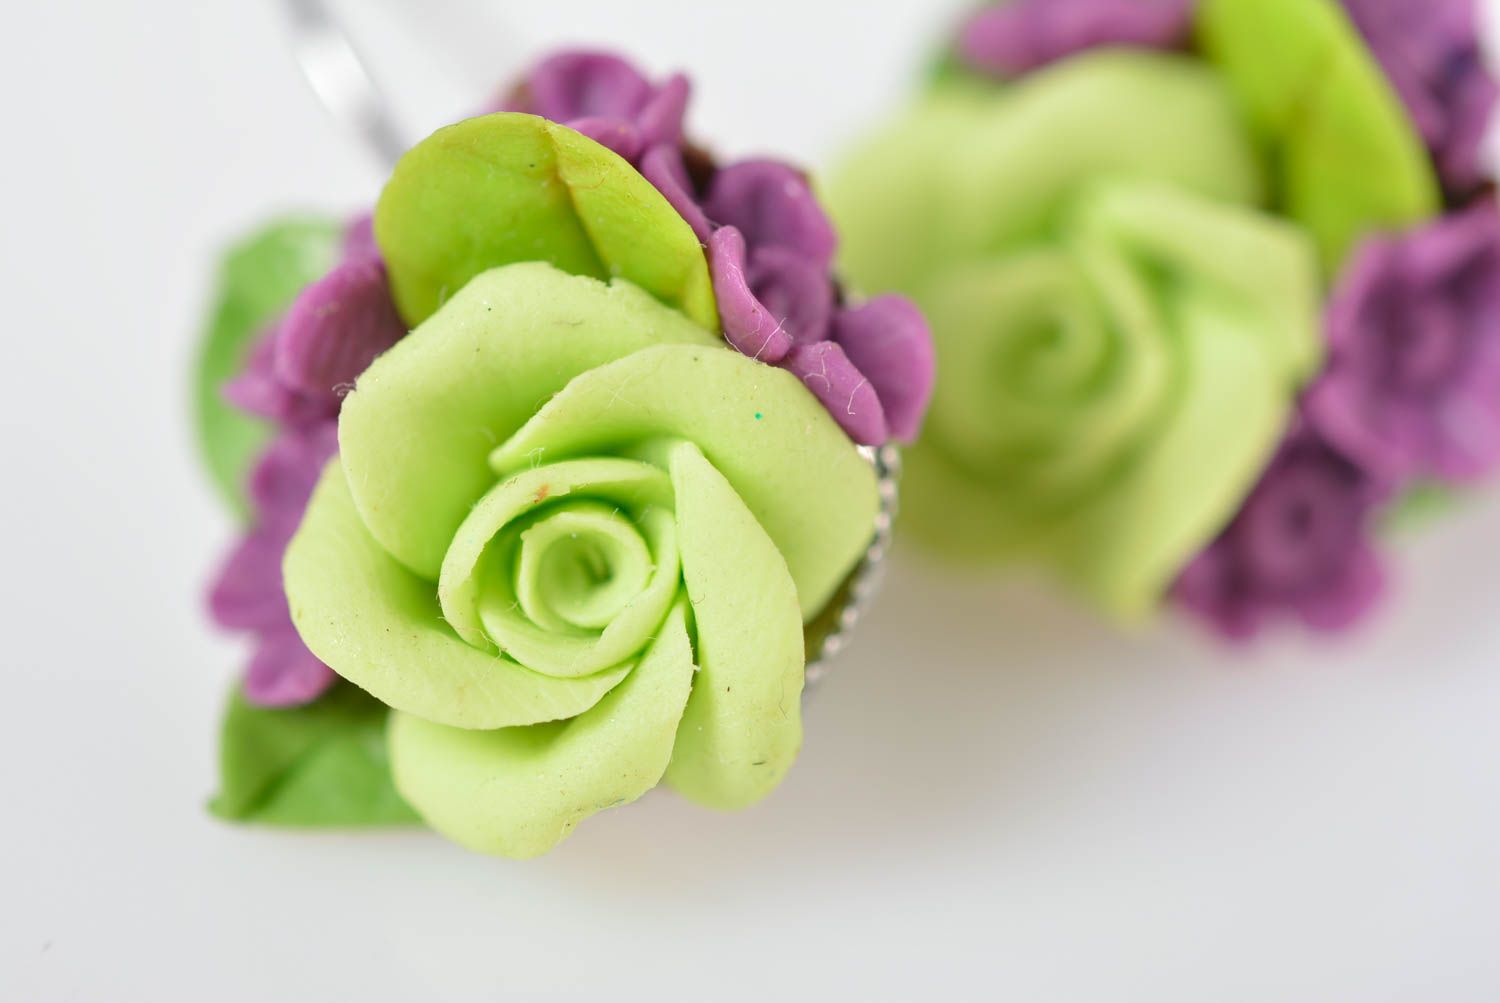 Handmade bijouterie porcelain earrings summer flower earrings stylish jewelry photo 4